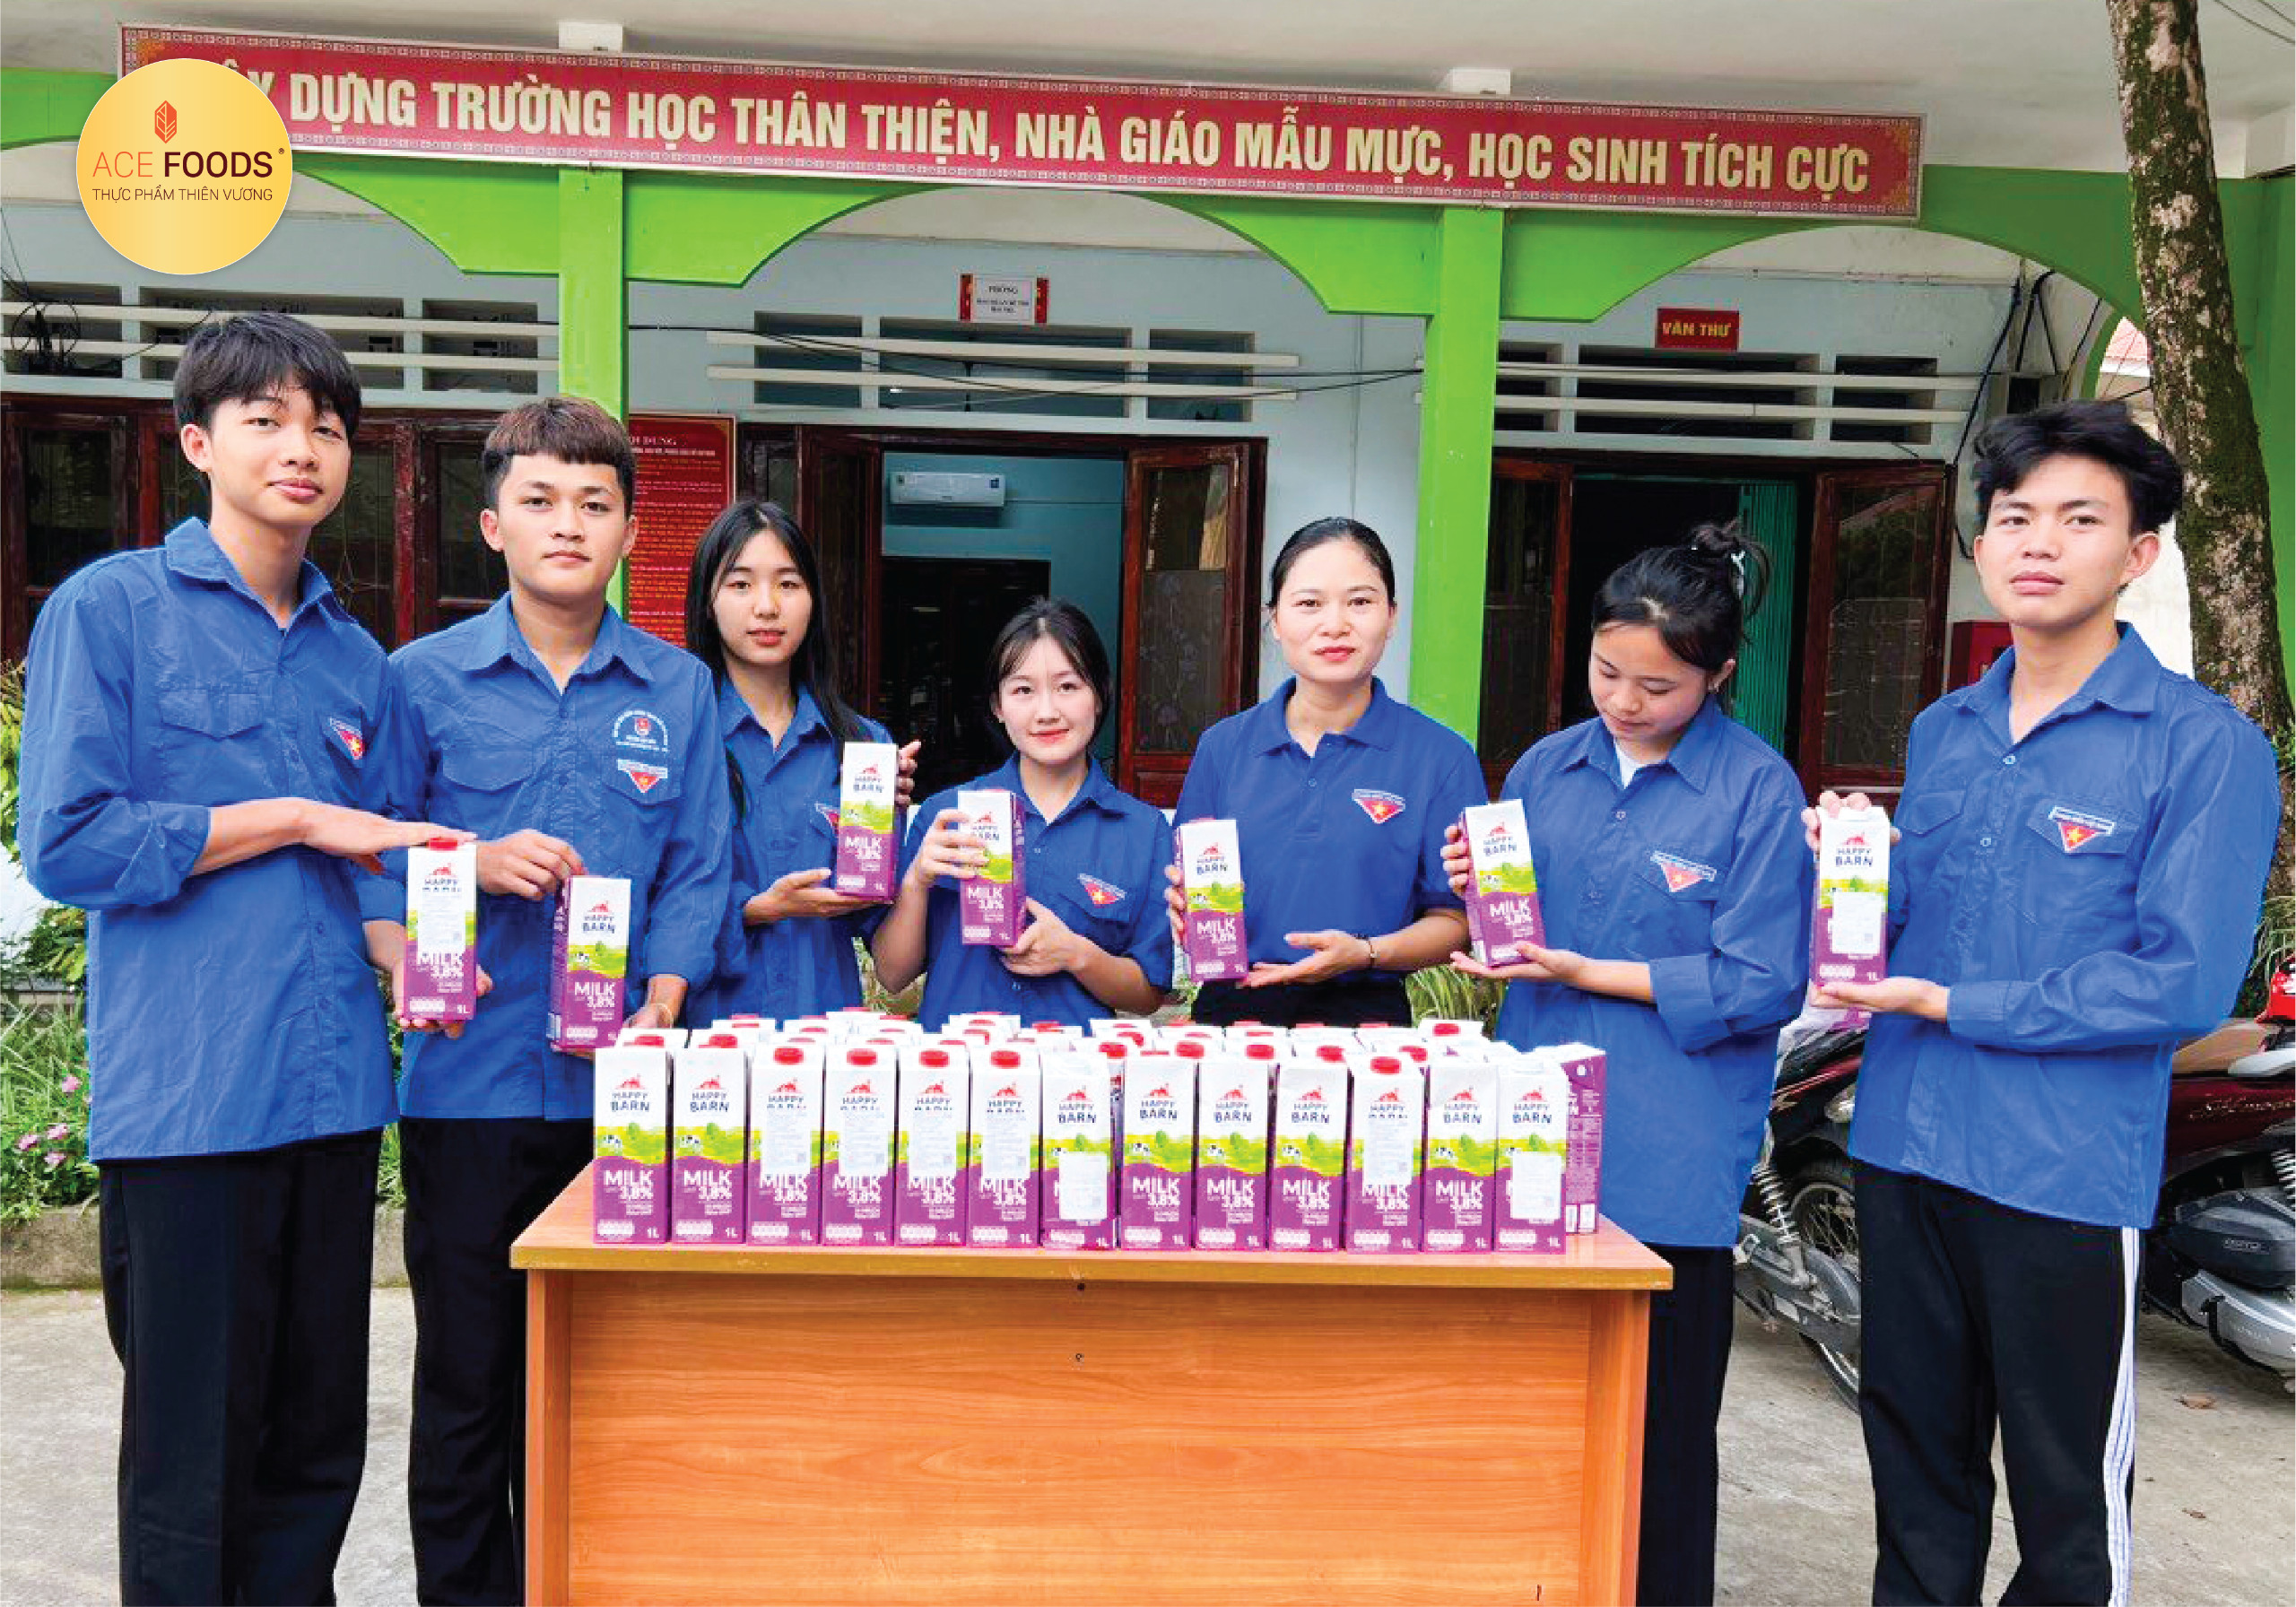 Thiên Vương ACE FOODS trợ sữa tươi nguyên kem Happy Barn 3.8% độ béo cho các em học sinh tại huyện Xín Mần